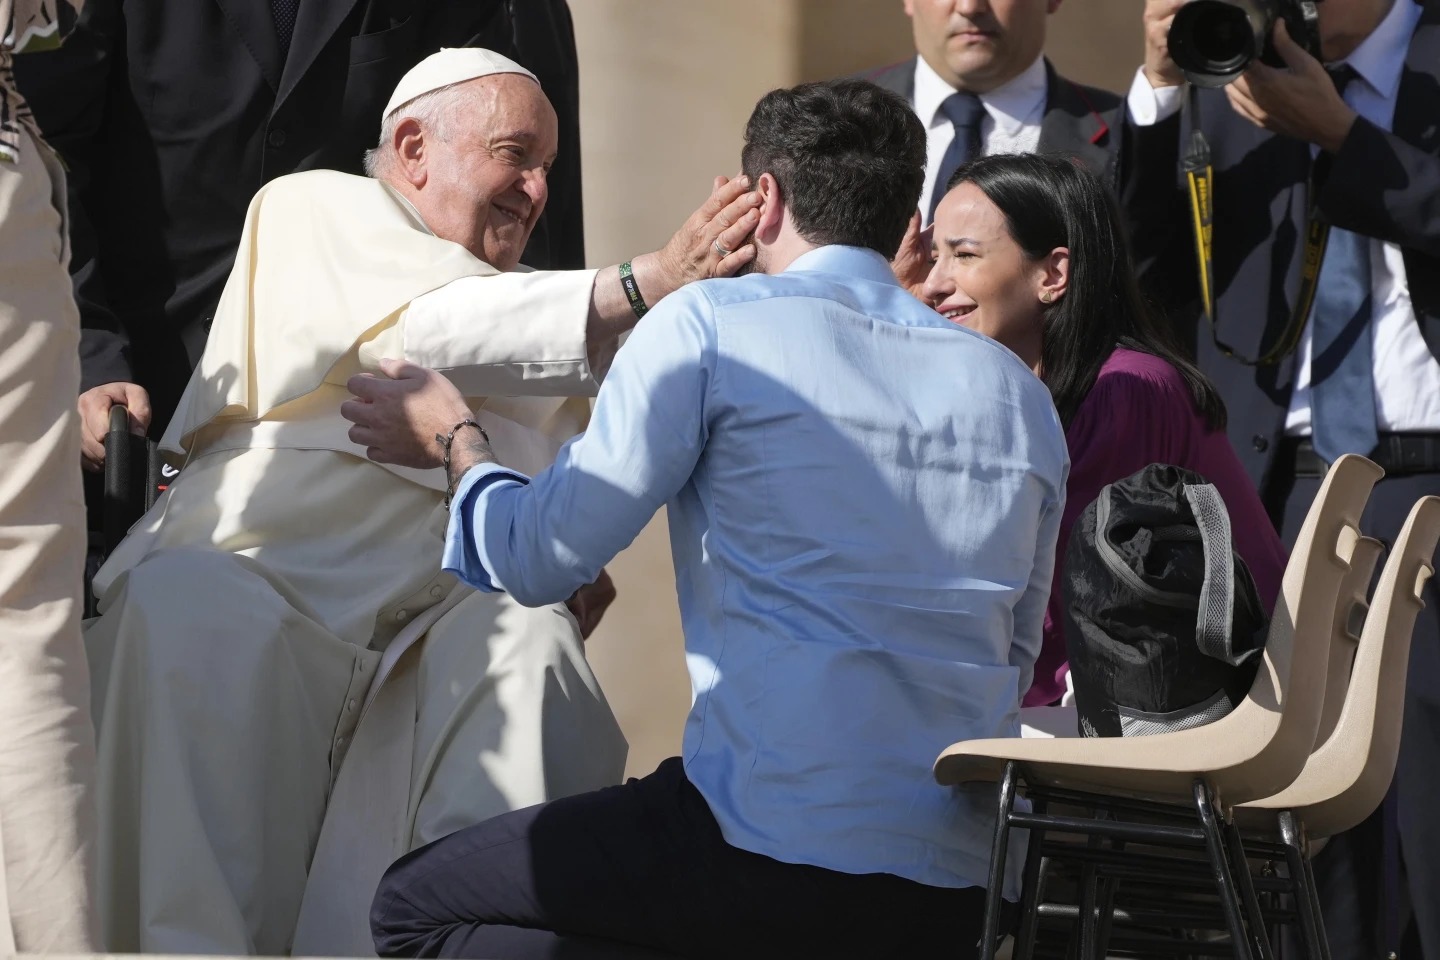 بوثيقة رسمية من الفاتيكان.. البابا فرانسيس يسمح للكهنة بمباركة زواج المثليين